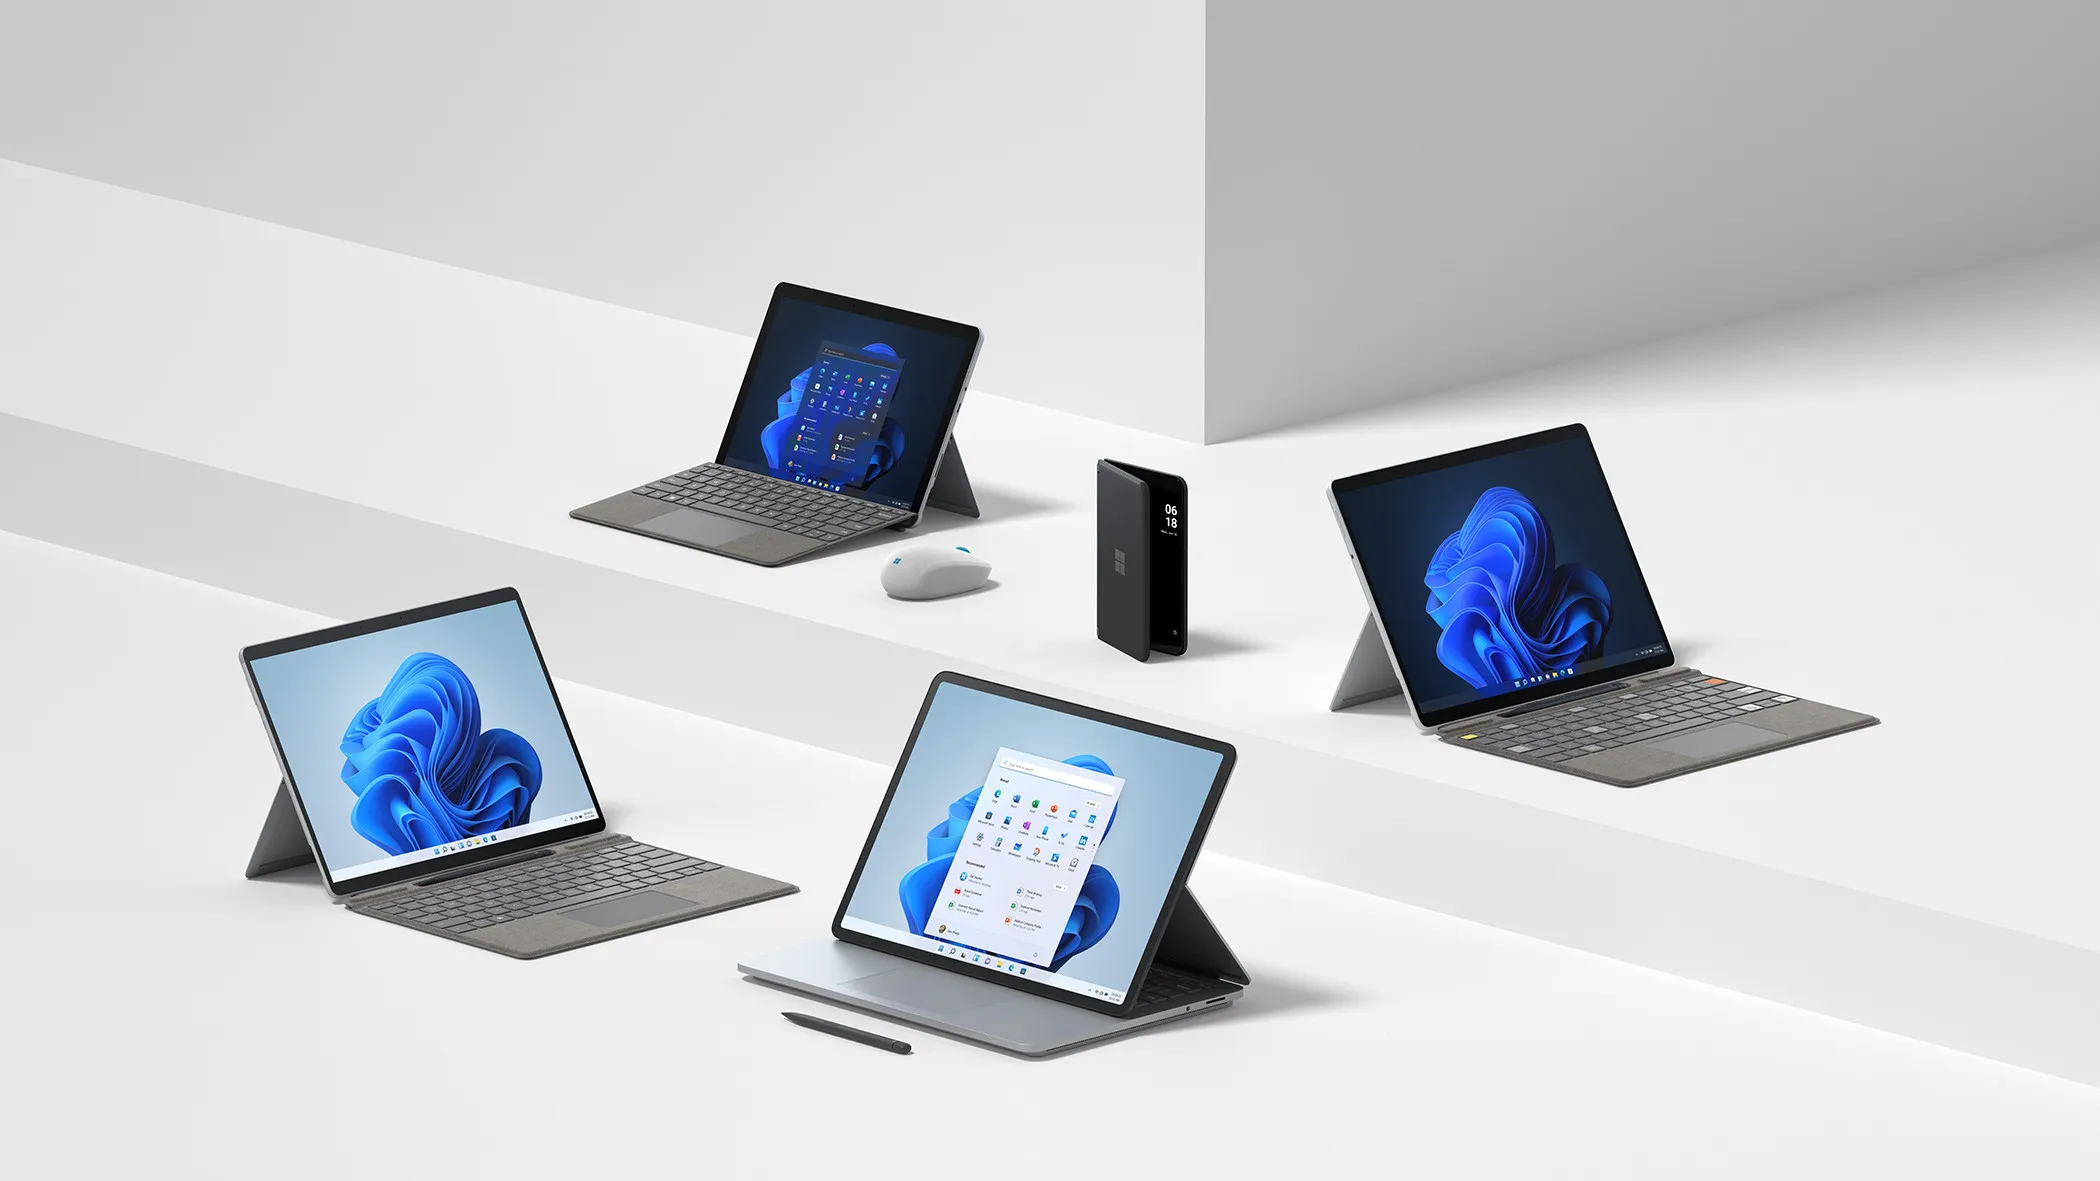 Dispositivos Surface Pro 8 Laptop Studio Go 3 Pro X y Duo 2 colocados sobre un fondo blanco